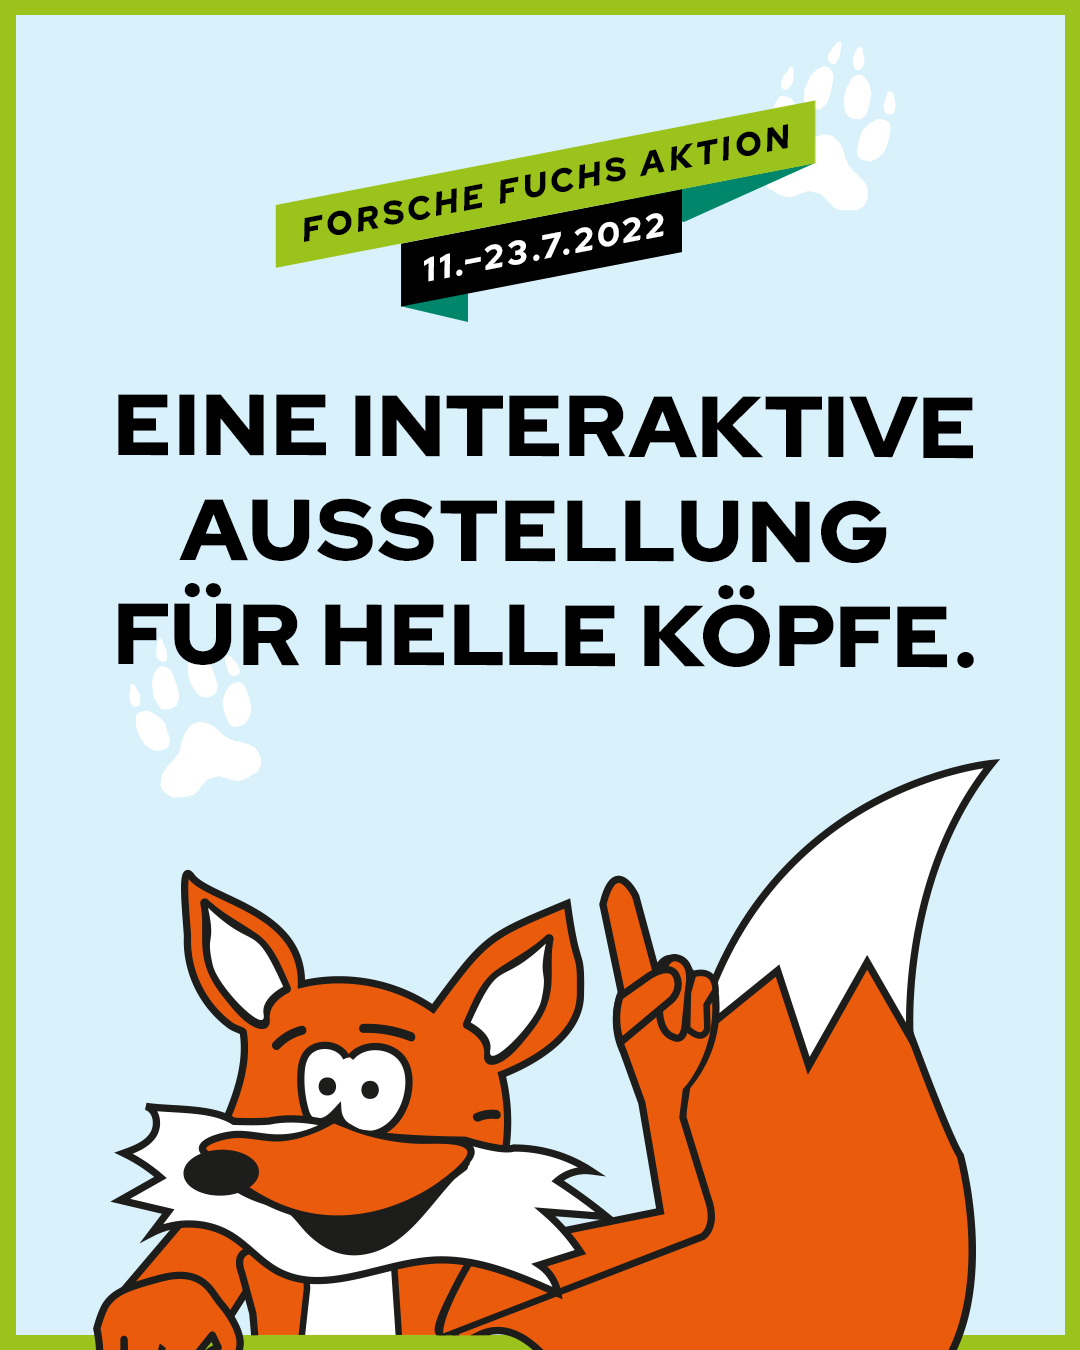 Forsche Fuchs in München Forum Schwanthalerhöhe